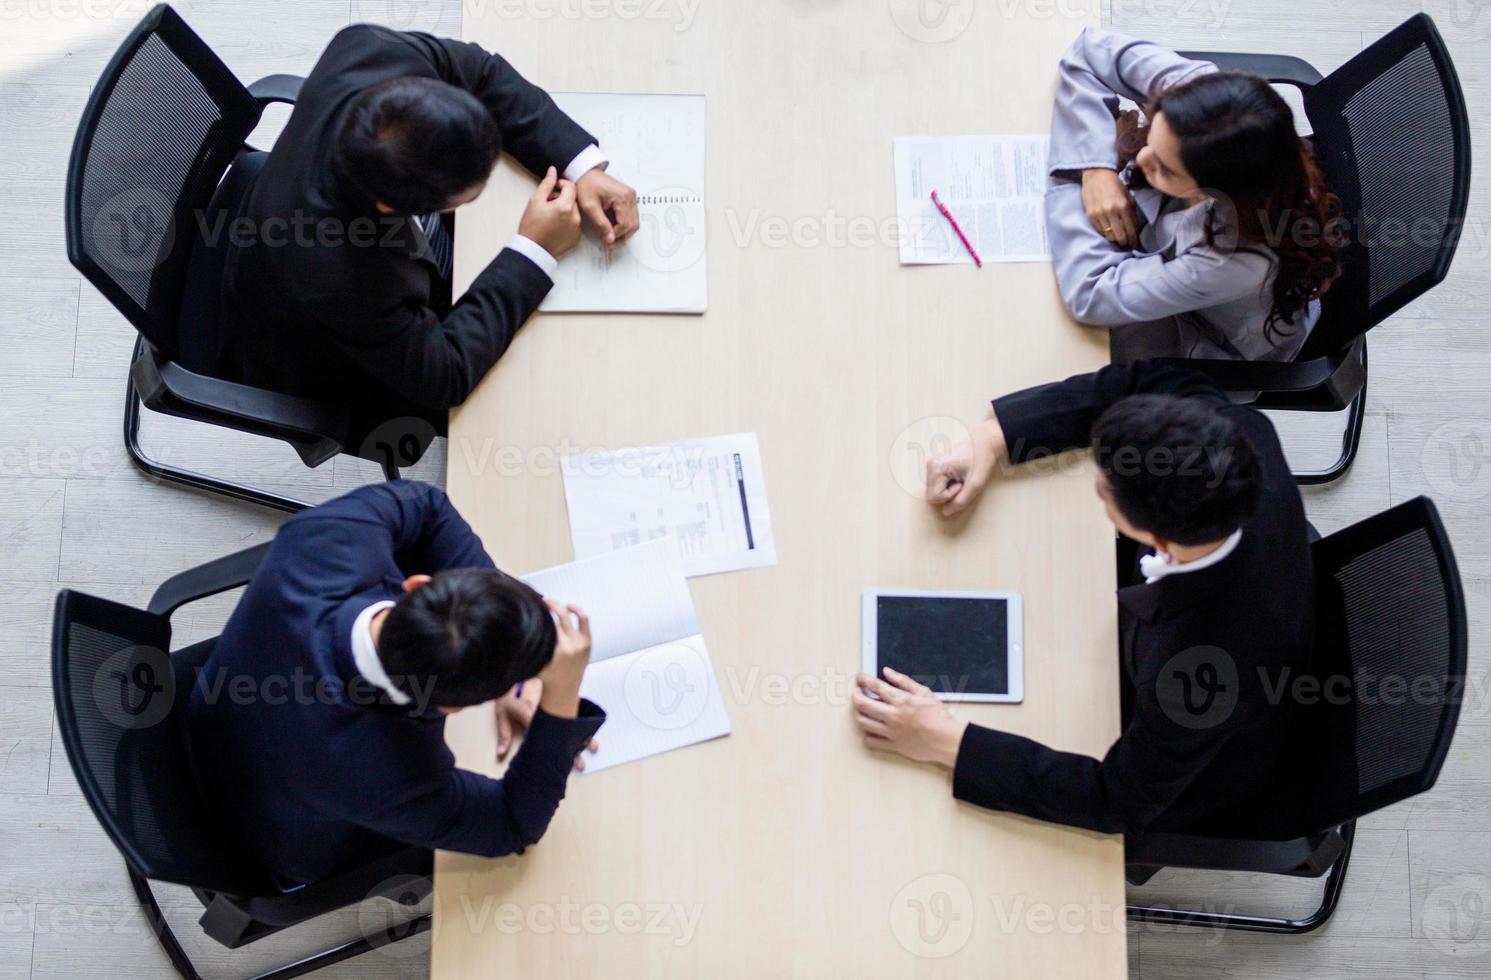 vista superior em um grupo de empresário e empresária tendo uma reunião e assumindo um compromisso comercial. foto